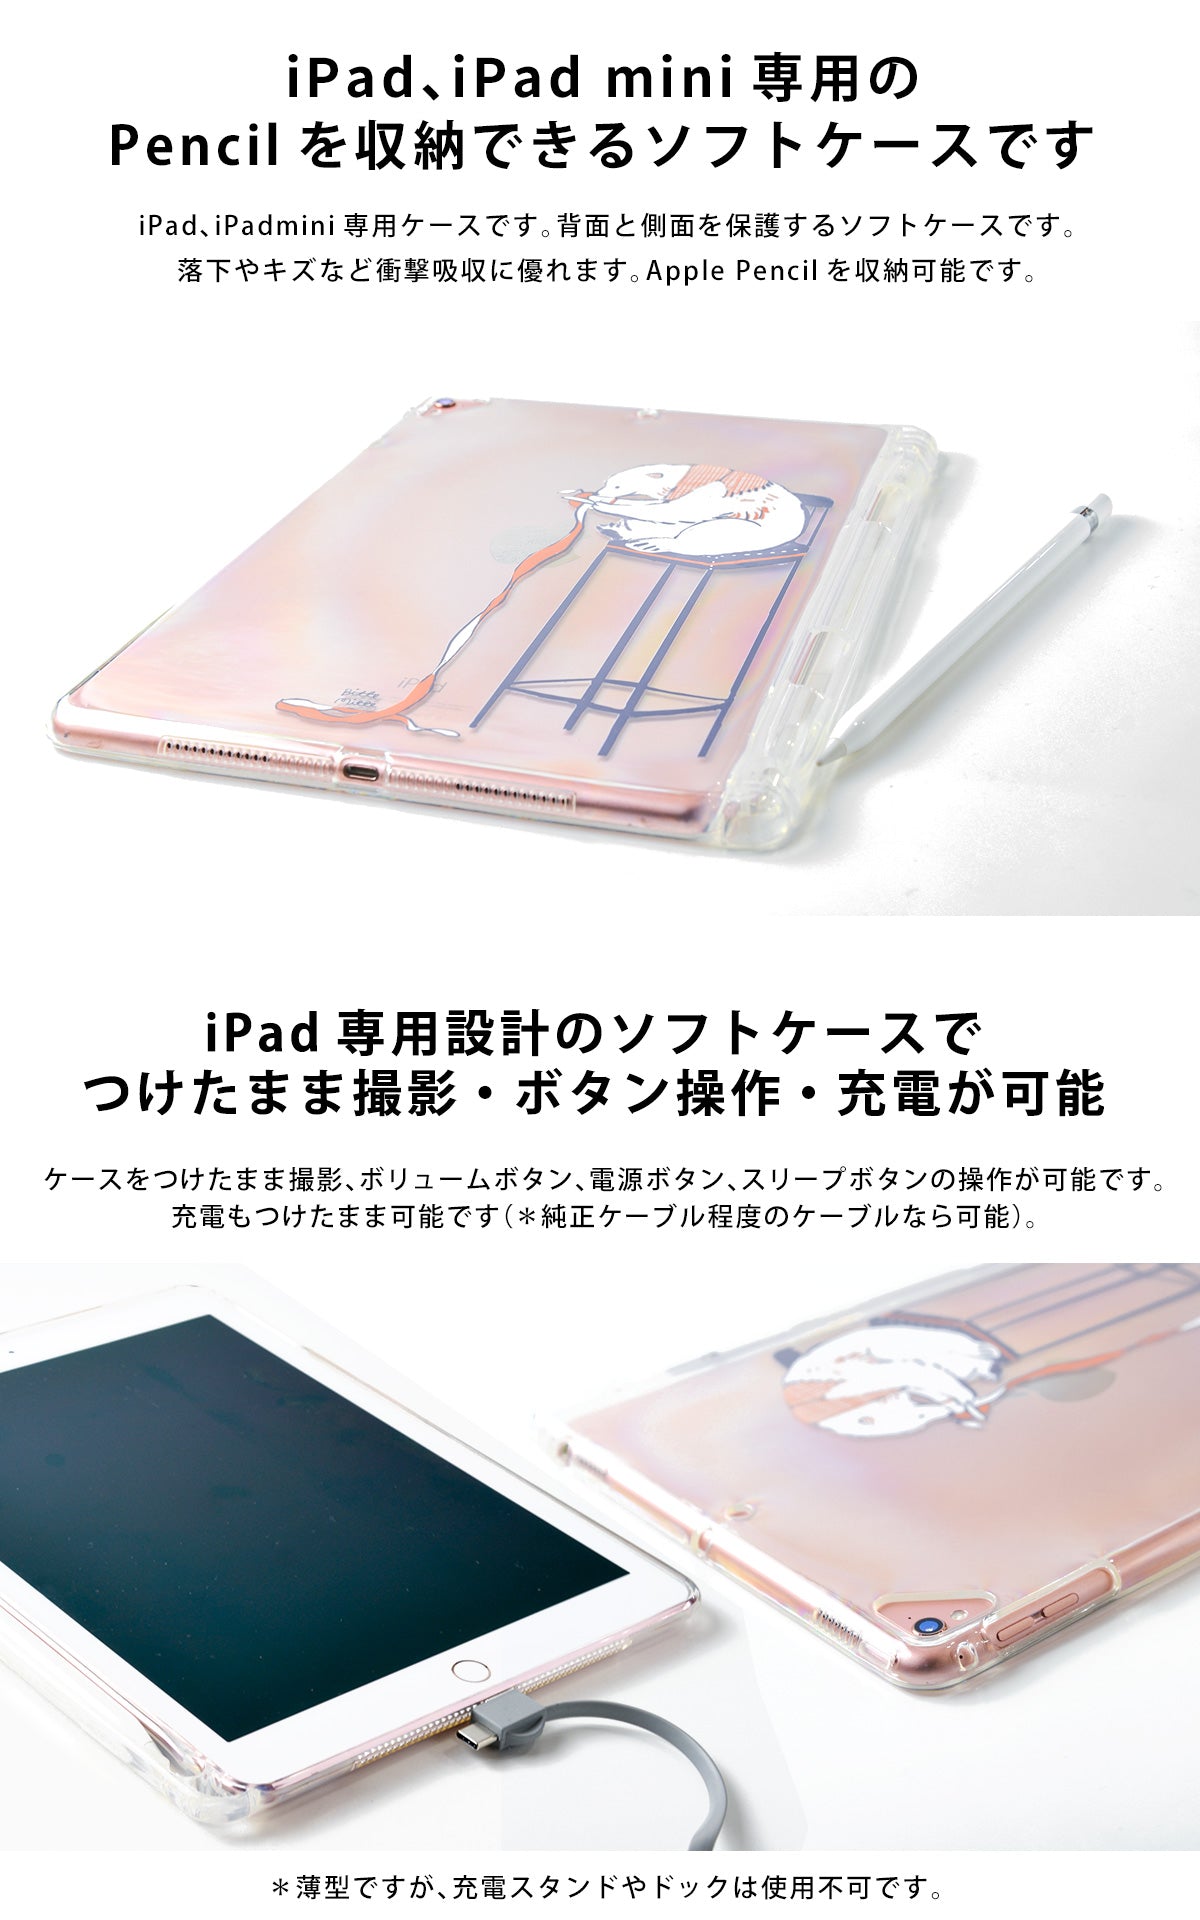 Apple Pencil 収納 ケース ペンシルケース アップルペンシル  ゴムバンド付き ペンケース ホルダー iPad アップル ペンシル